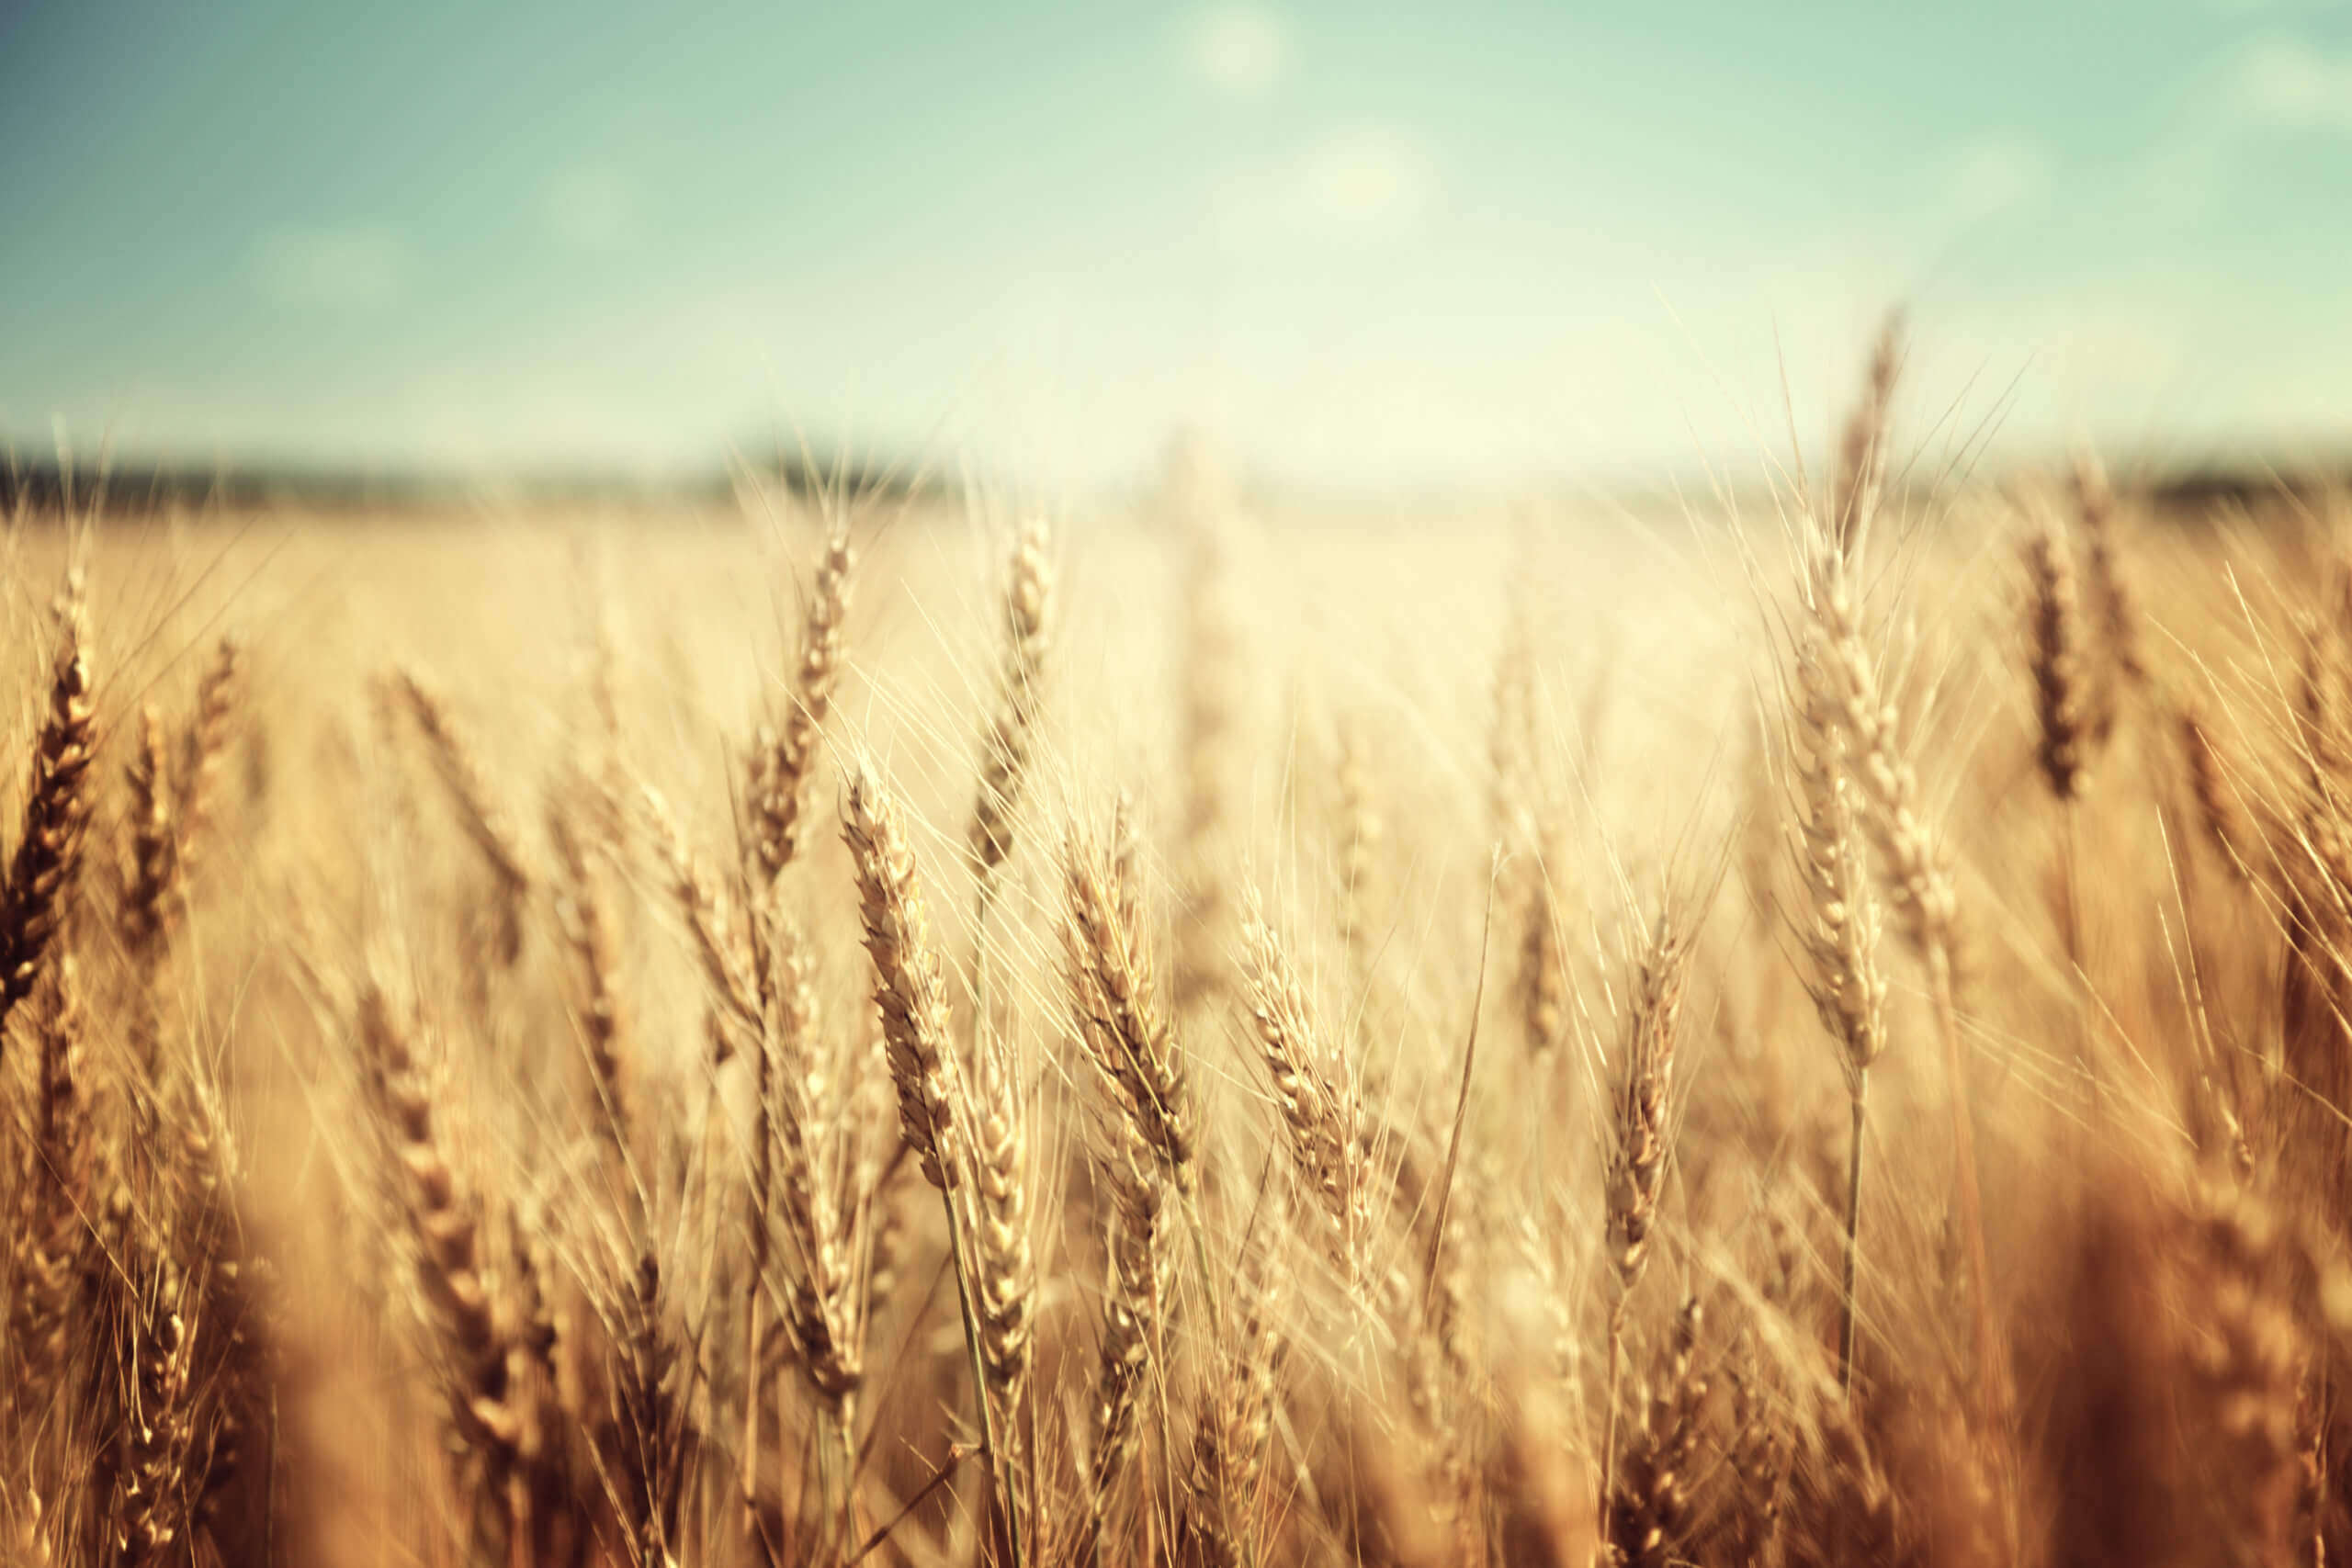 Le blé baisse légèrement en raison des inquiétudes sur l’offre causées par des conditions météorologiques défavorables